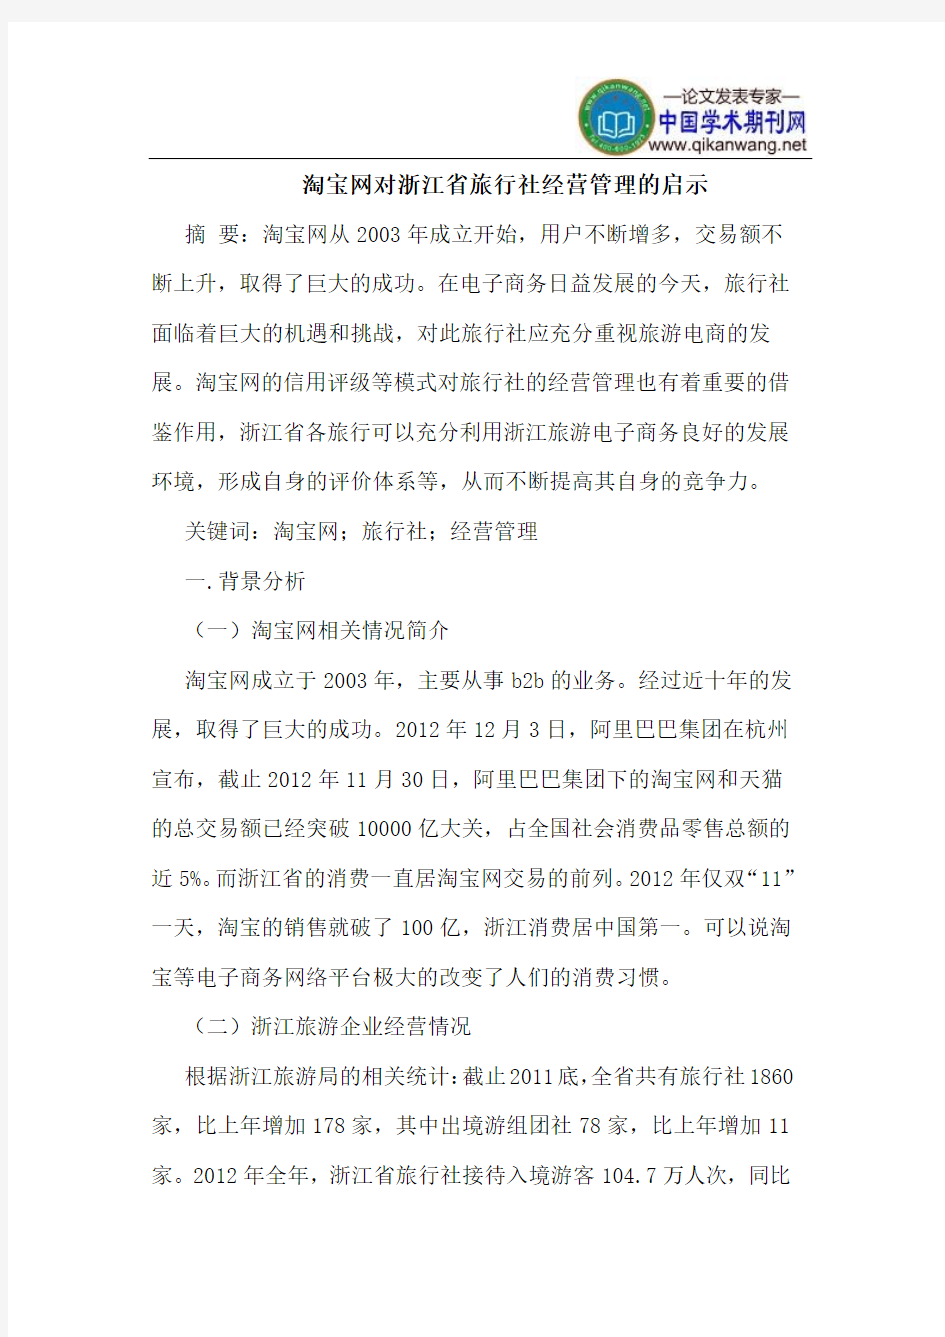 淘宝网对浙江省旅行社经营管理的启示